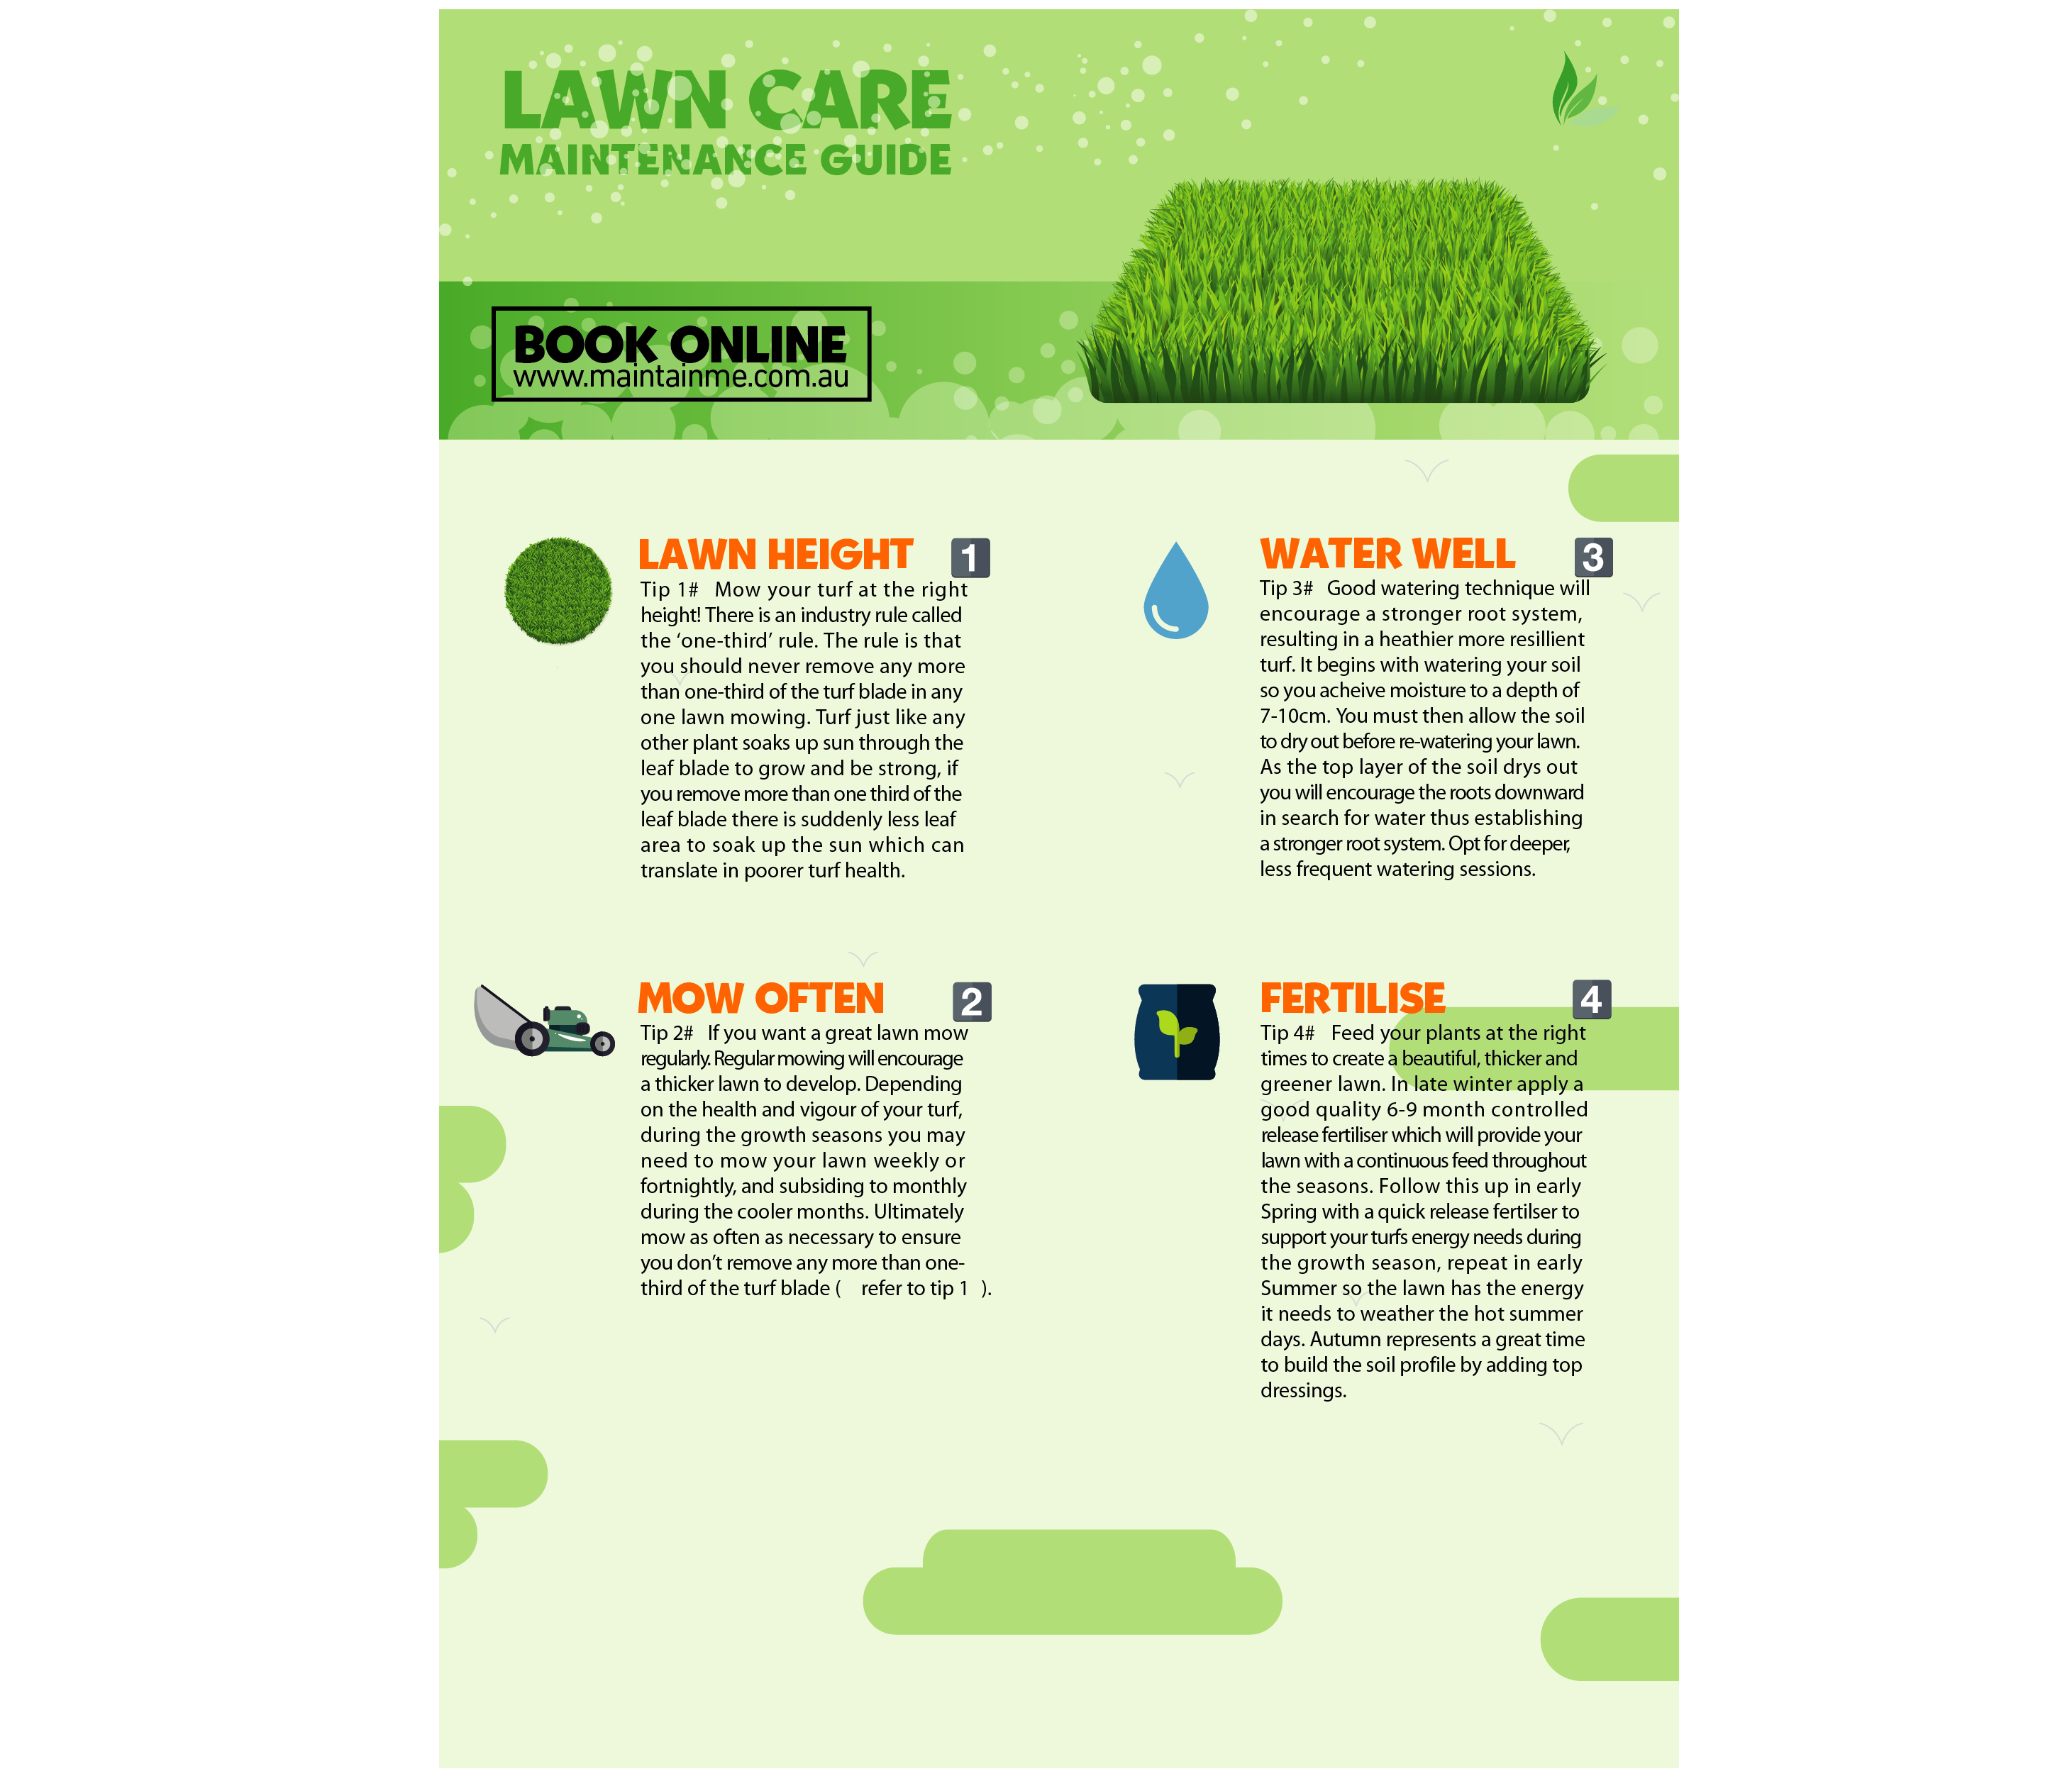 Lawn care guide